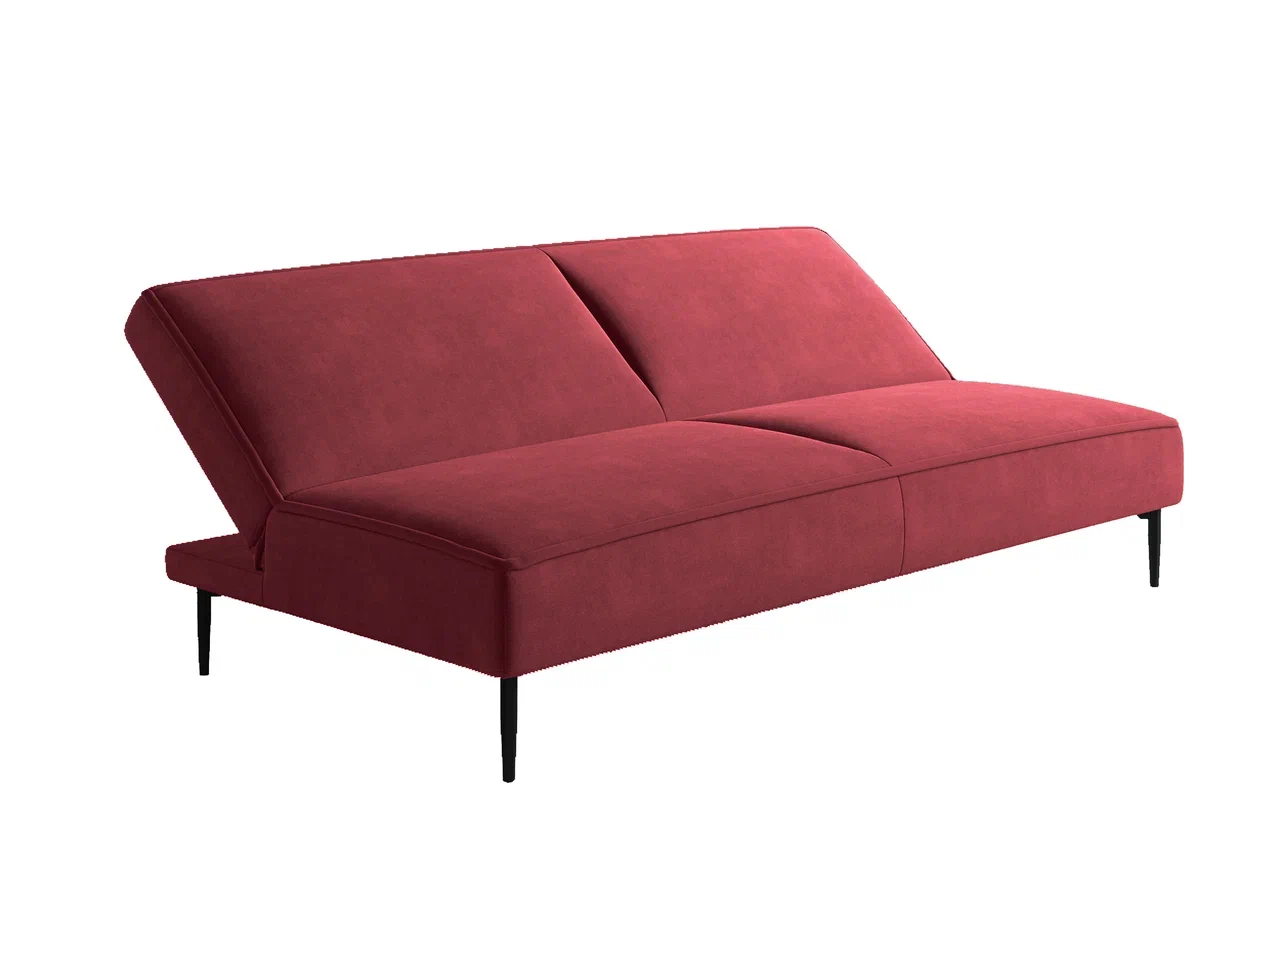 Este диван-кровать трехместный, прямой, без подлокотников, бархат бордовый16 - купить в Москве в интернет-магазине Top concept